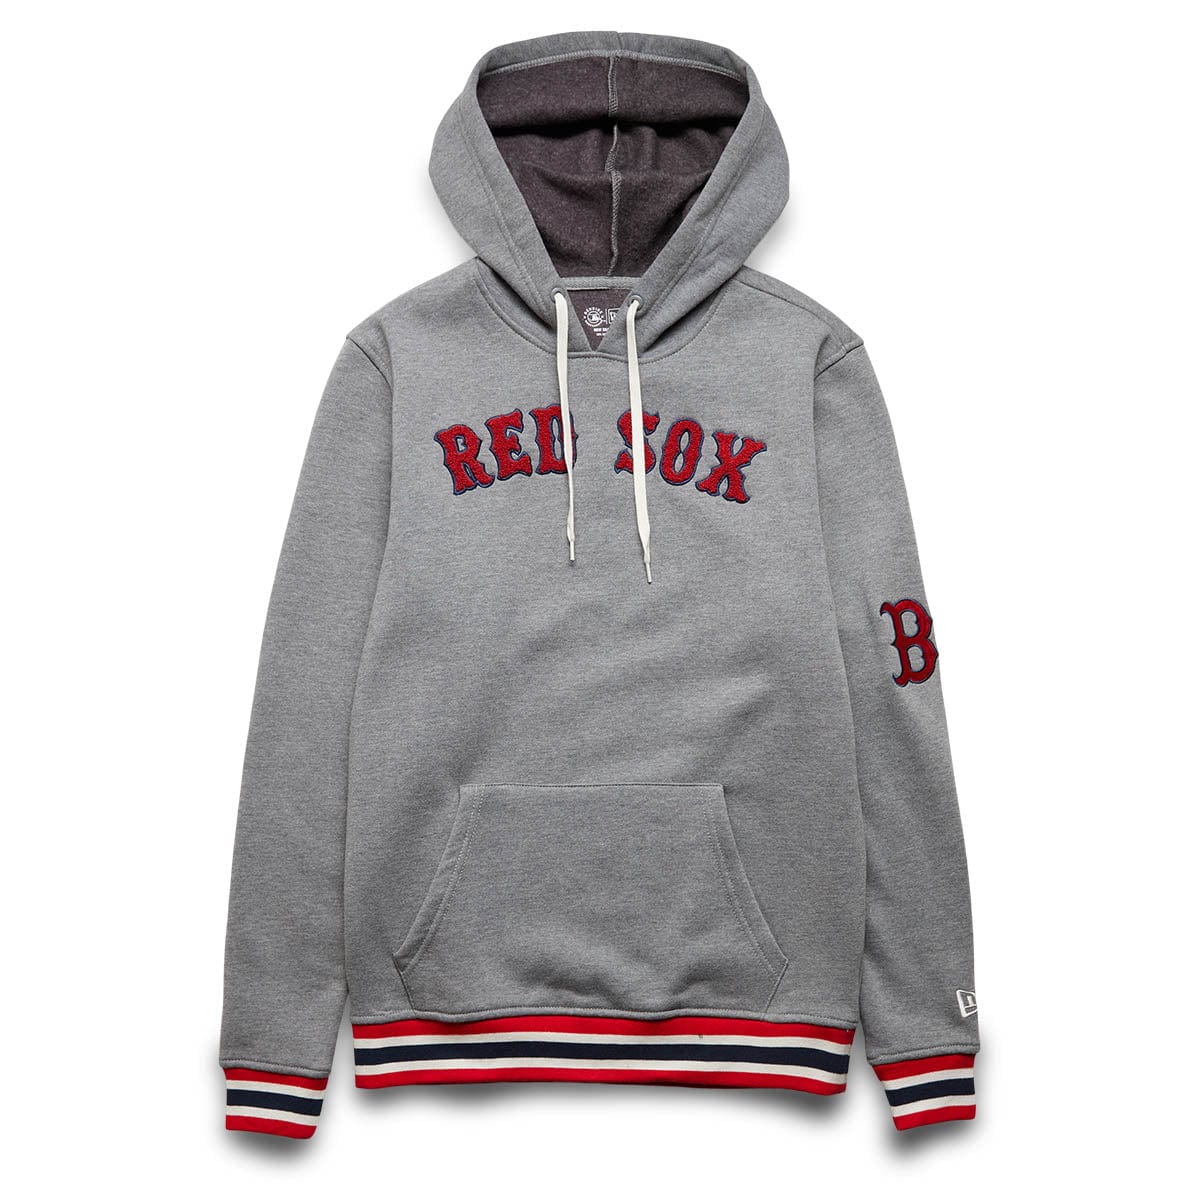 boston red sox hoodie